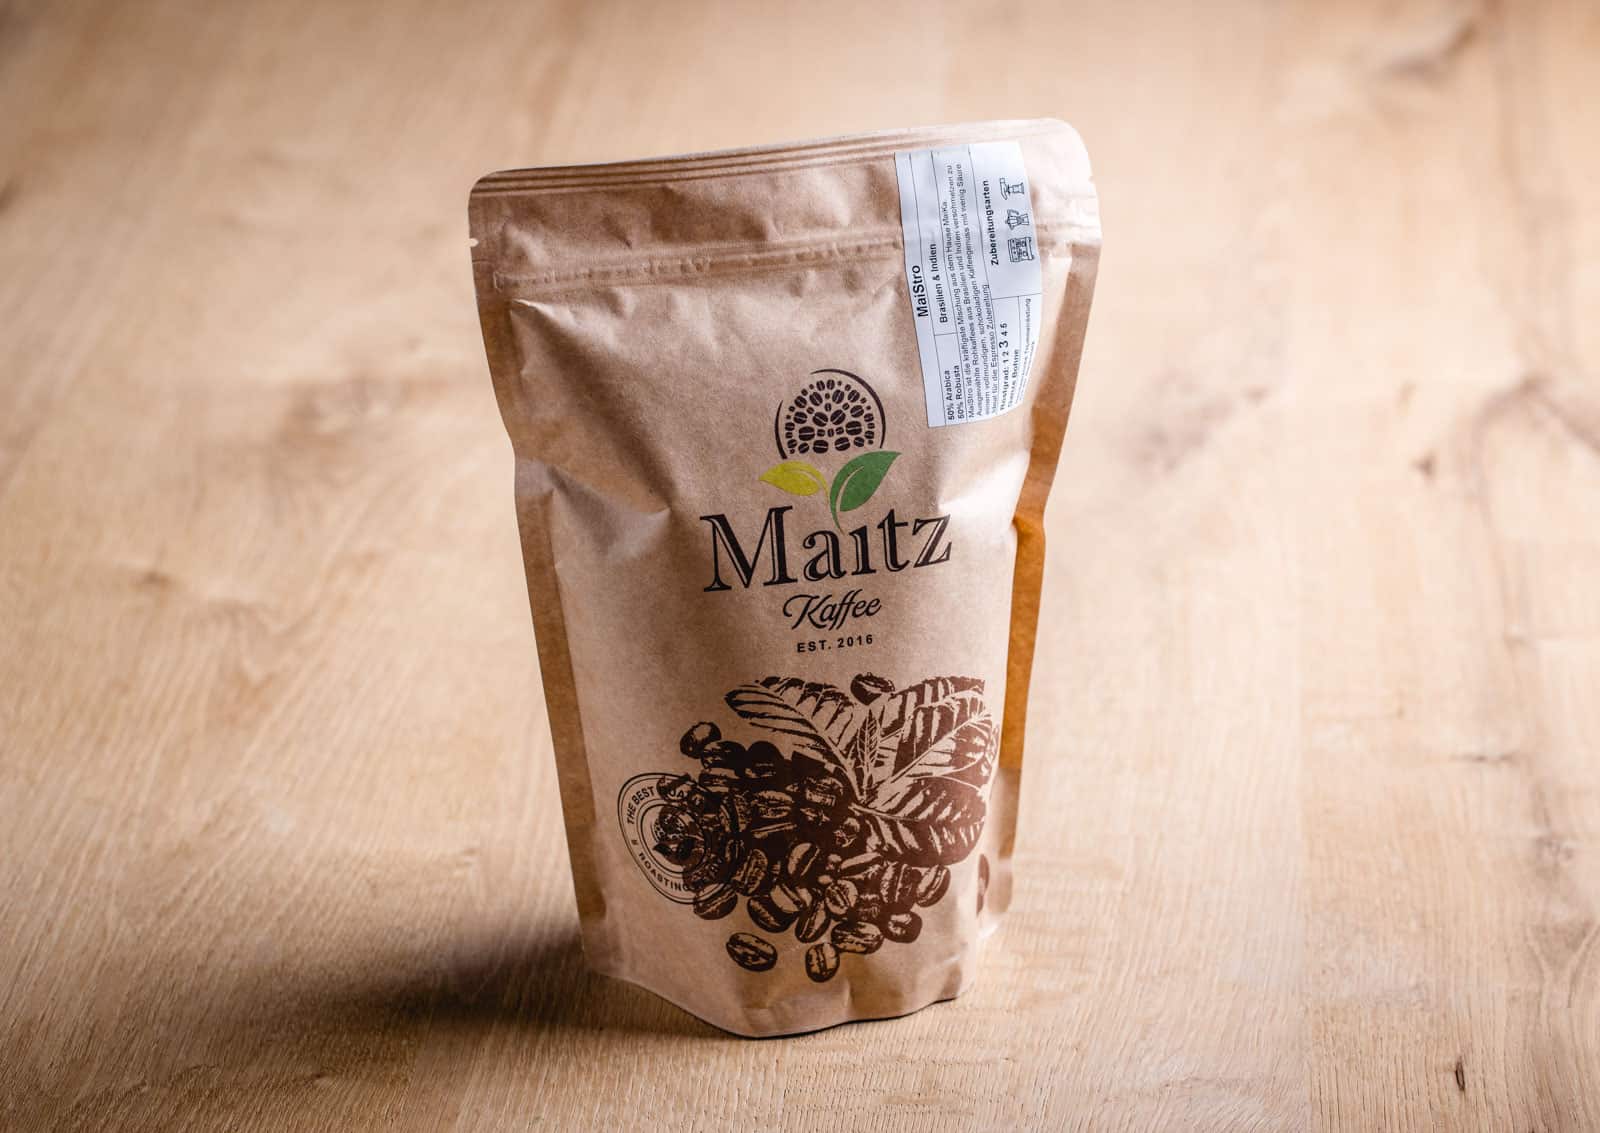 Maitz Kaffee Strong